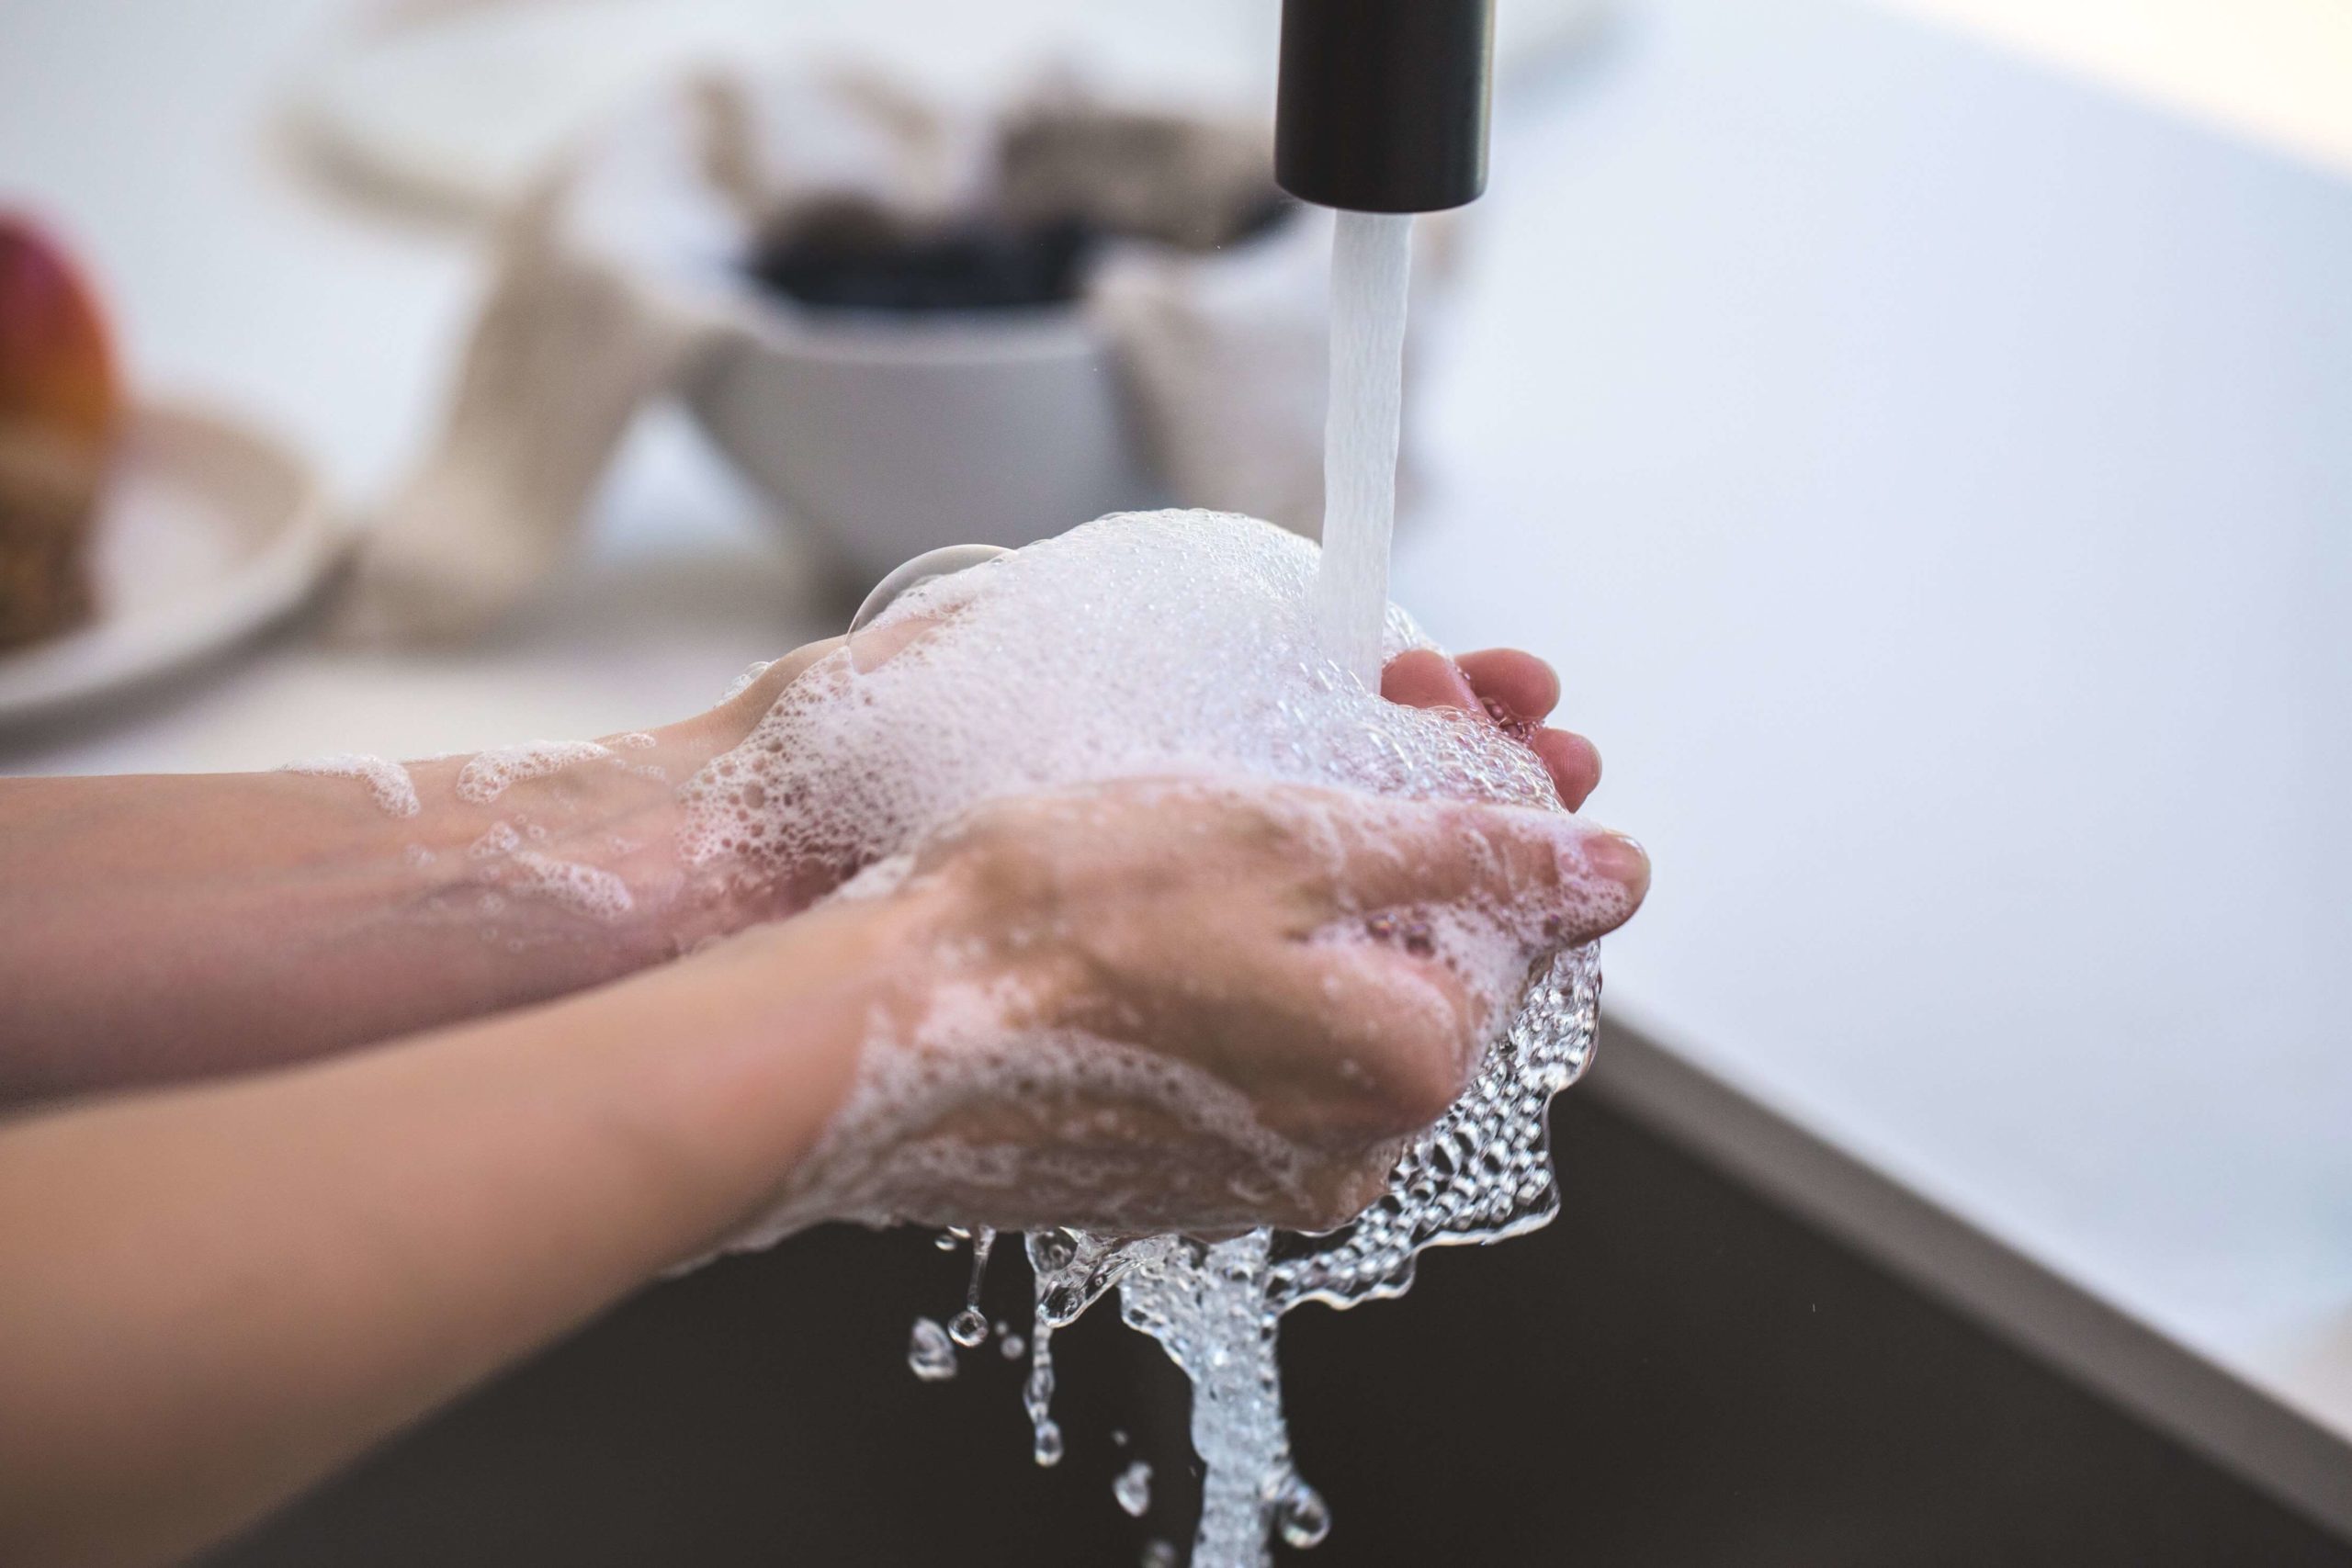 Corona Virus hand washing